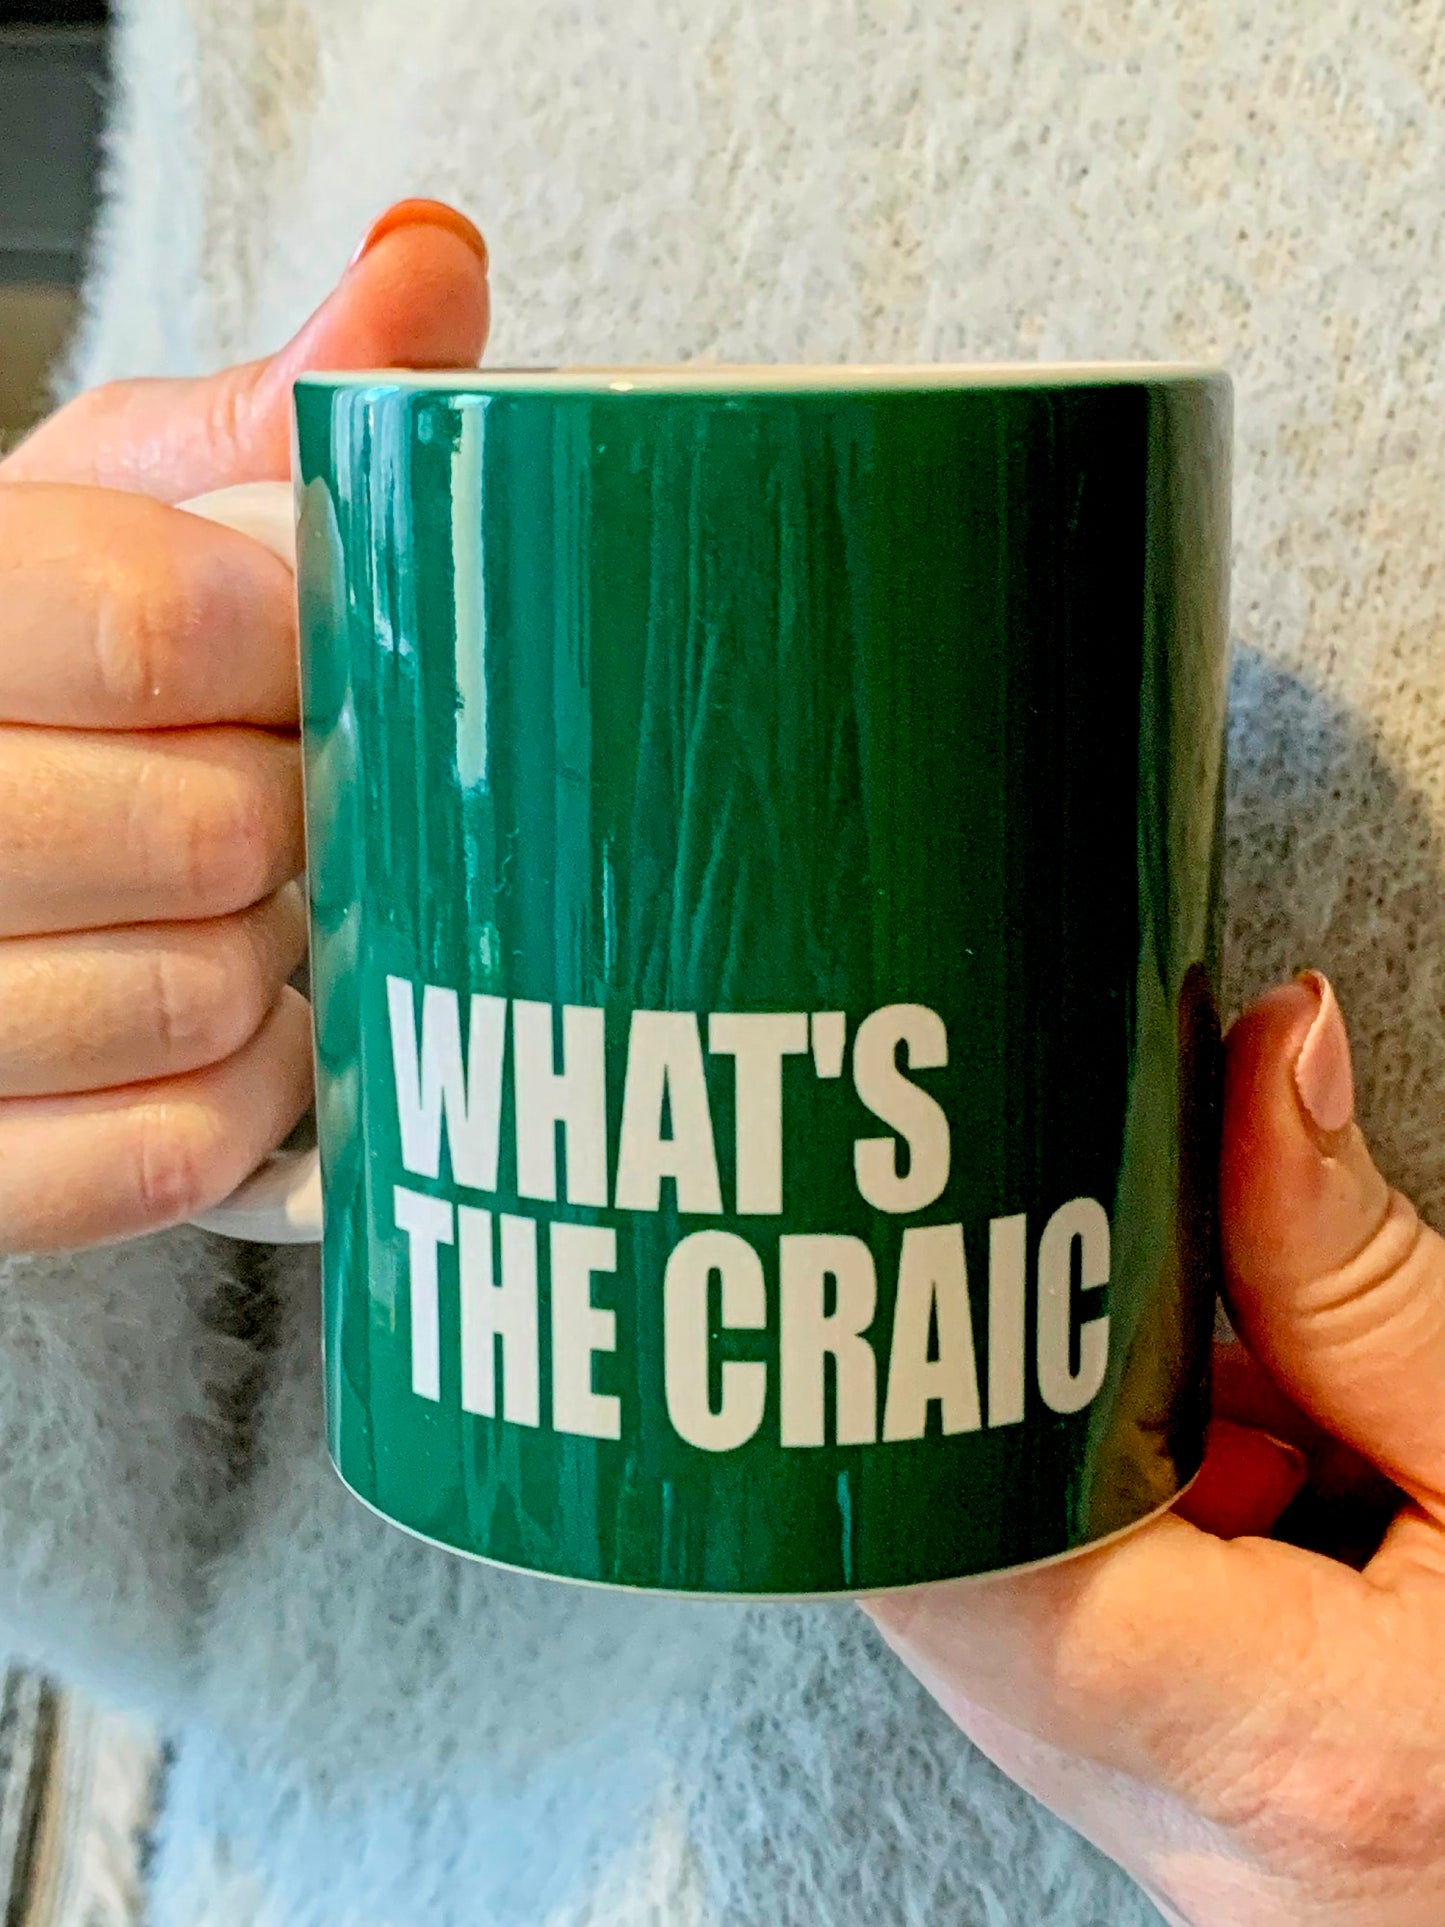 Northern Ireland Slang Mug - What's The Craic